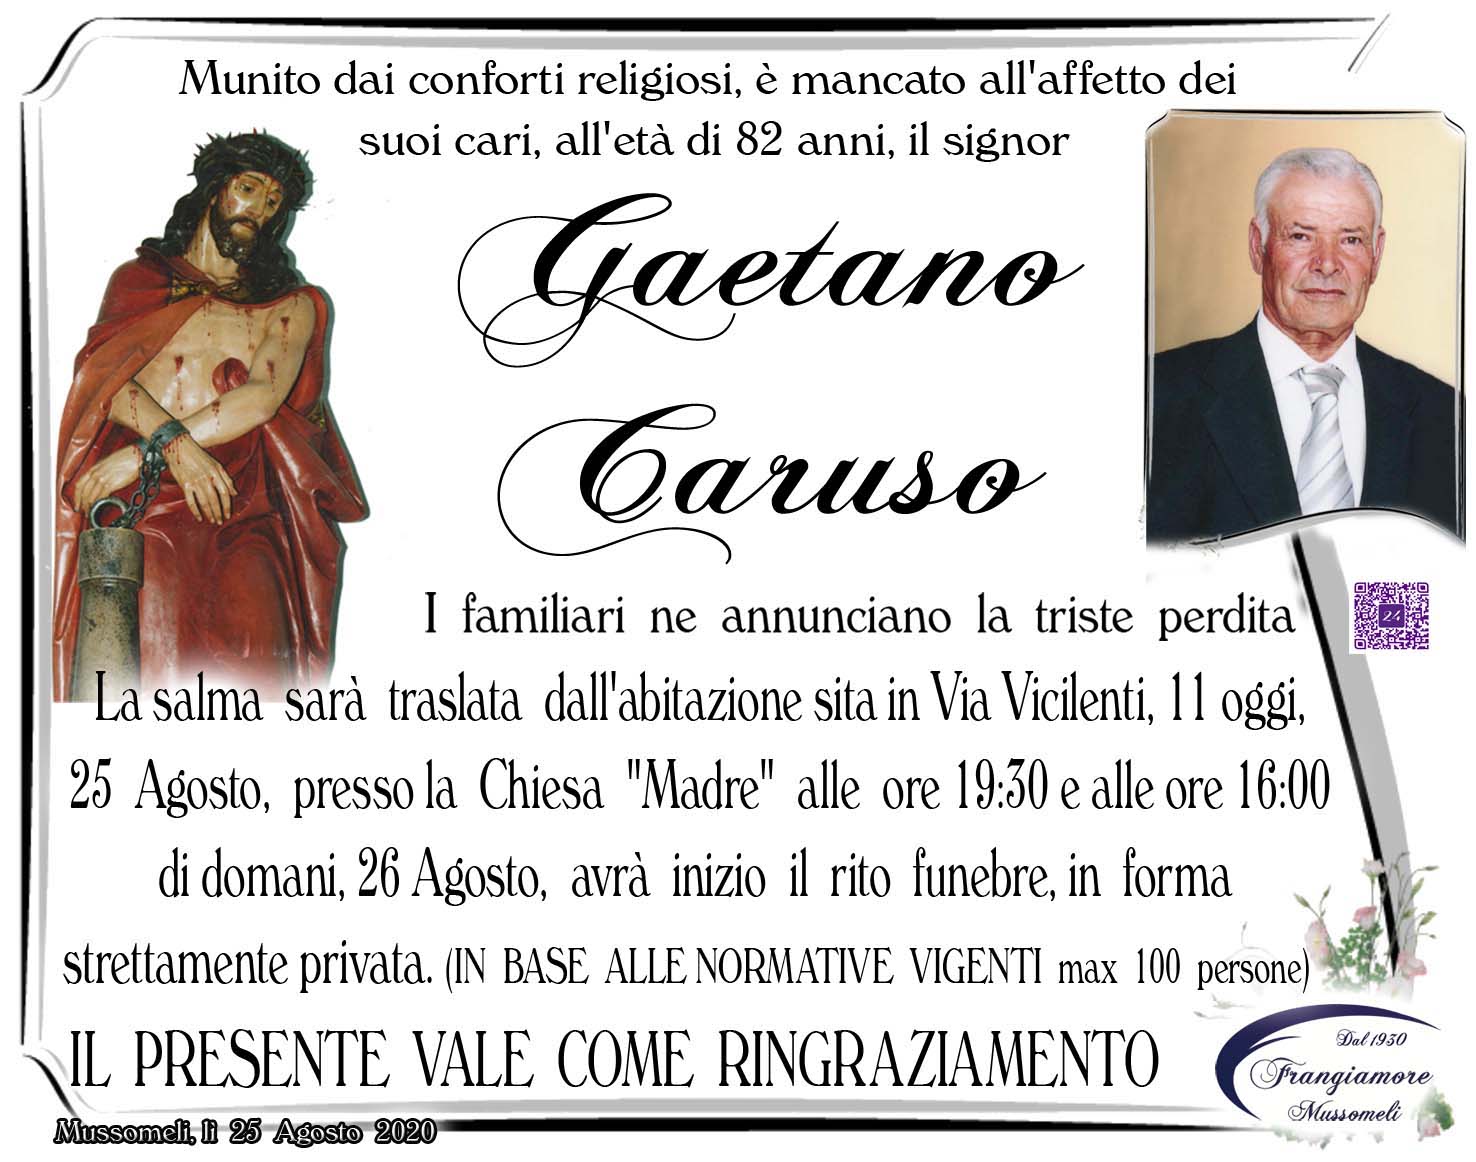 Gaetano Caruso